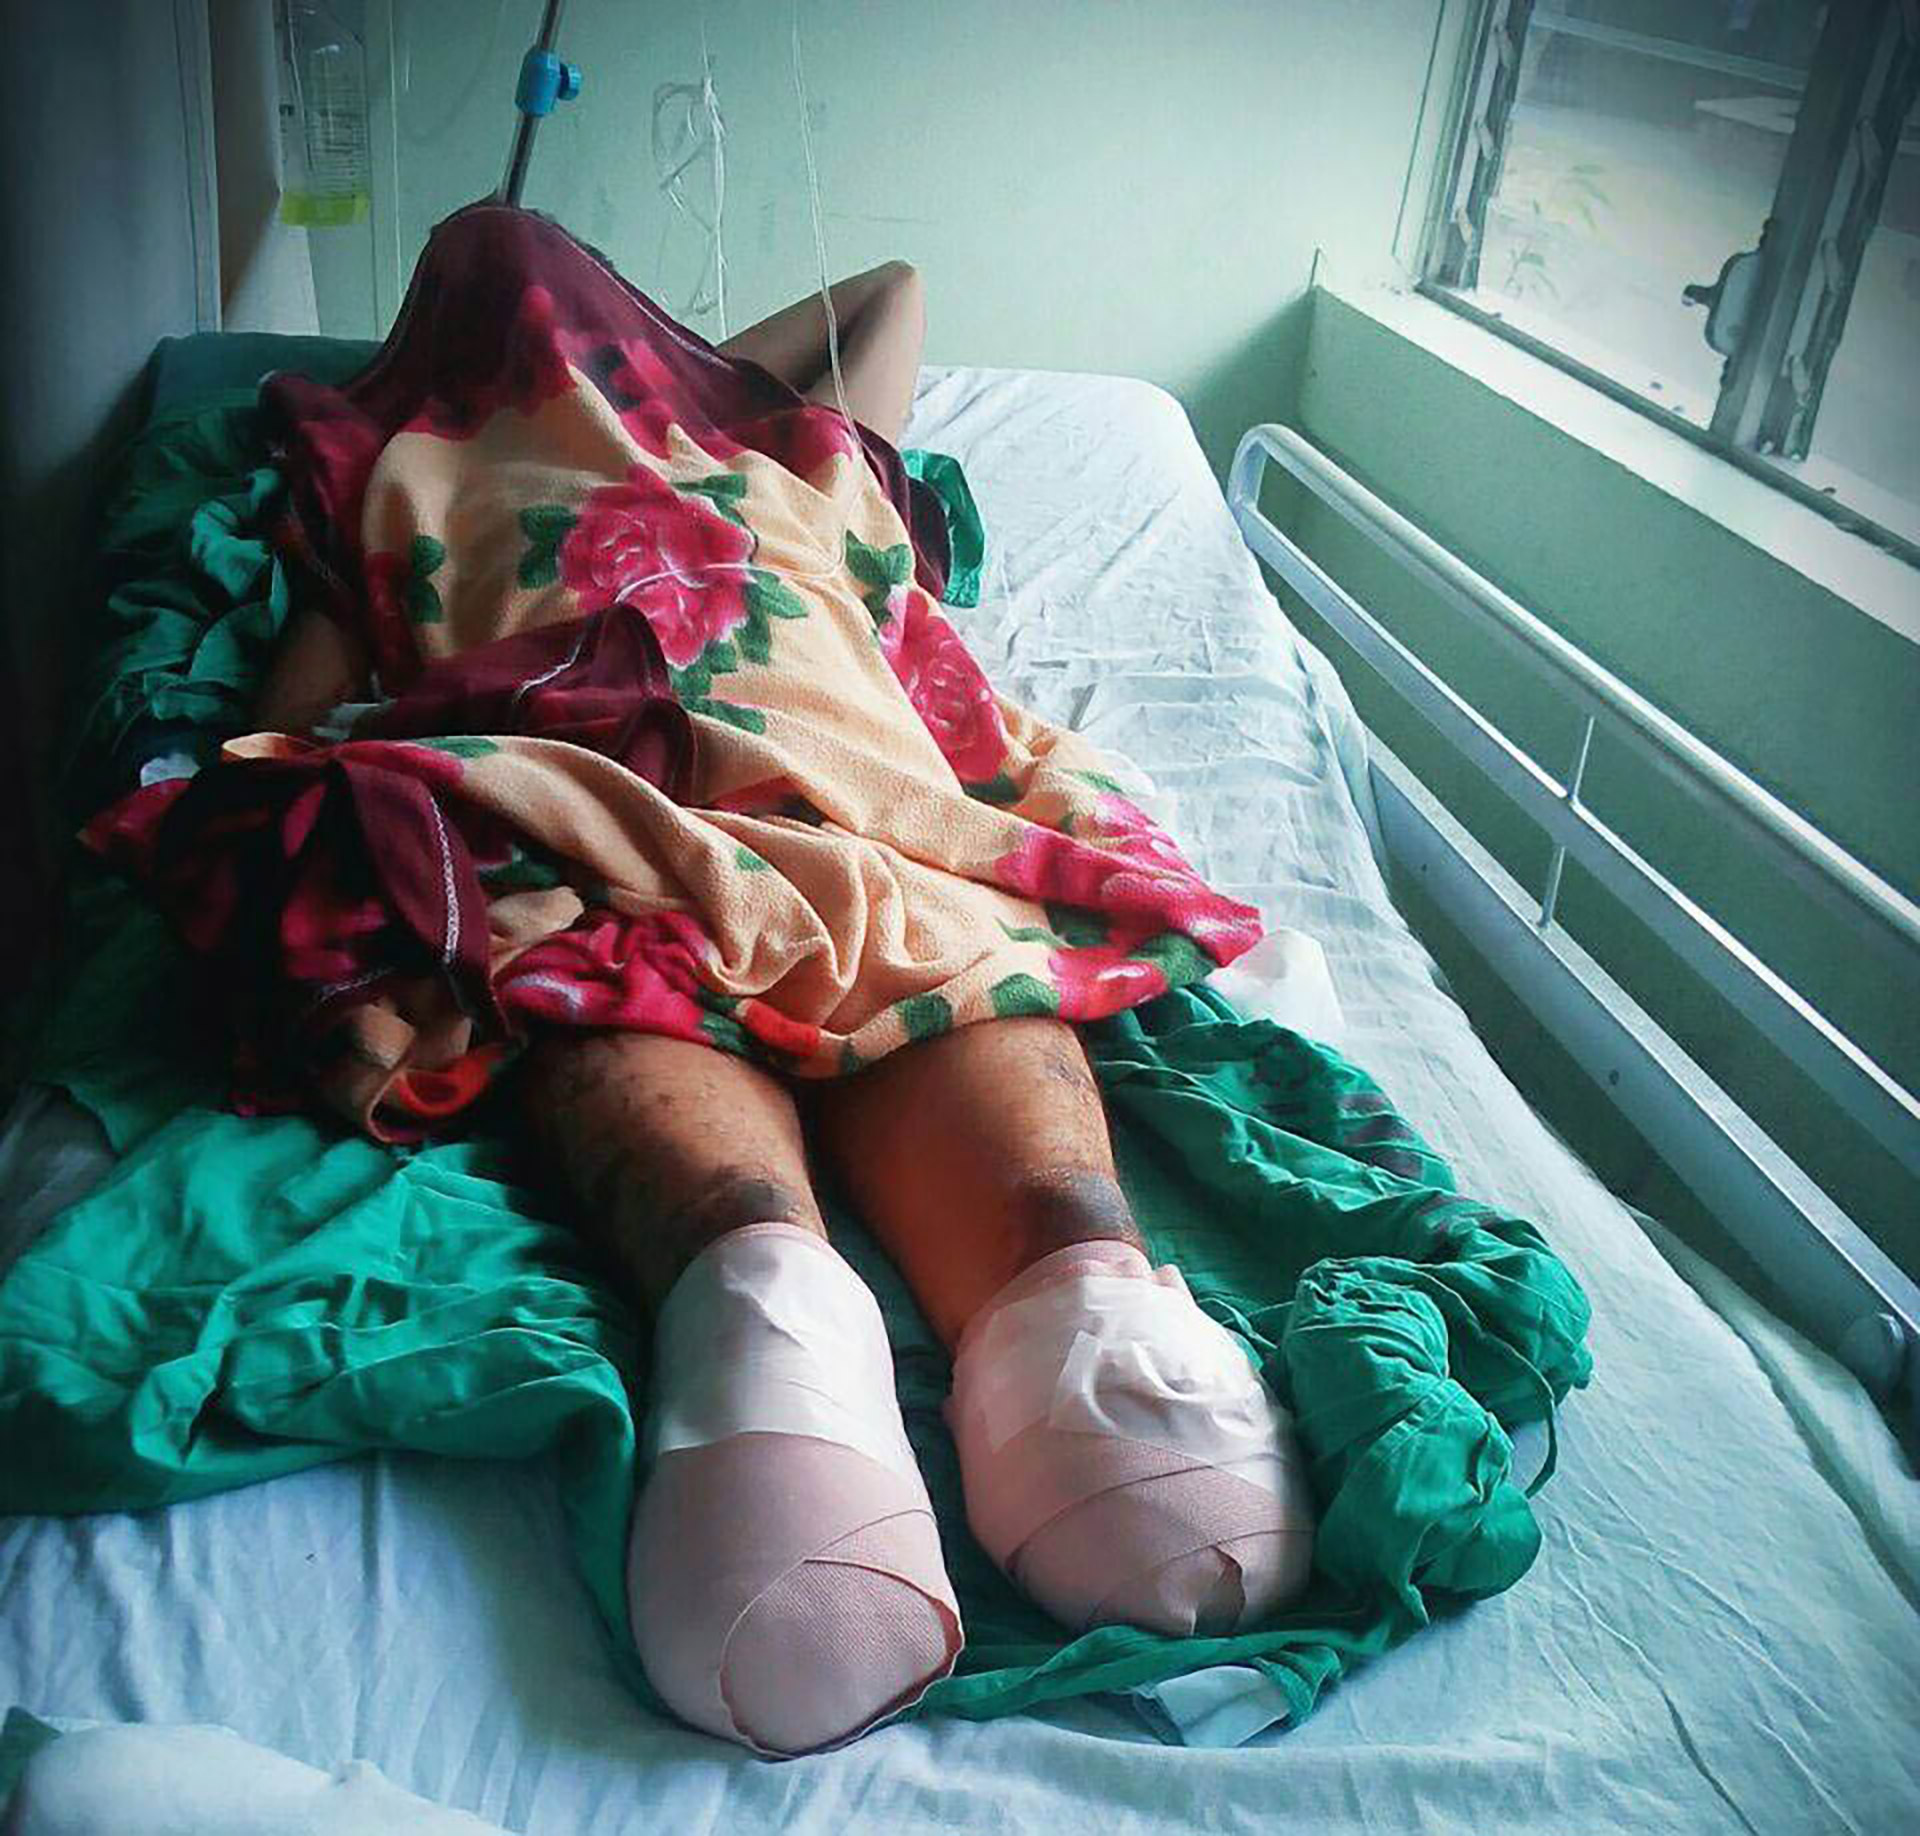 El campesino Juan Lanzas perdió sus pies en enero de 2018 después que sufrió una golpiza al ser detenido, fue recluido en un baño inmundo durante 18 días lo que le provocó gangrena, (Foto cortesía La Prensa)